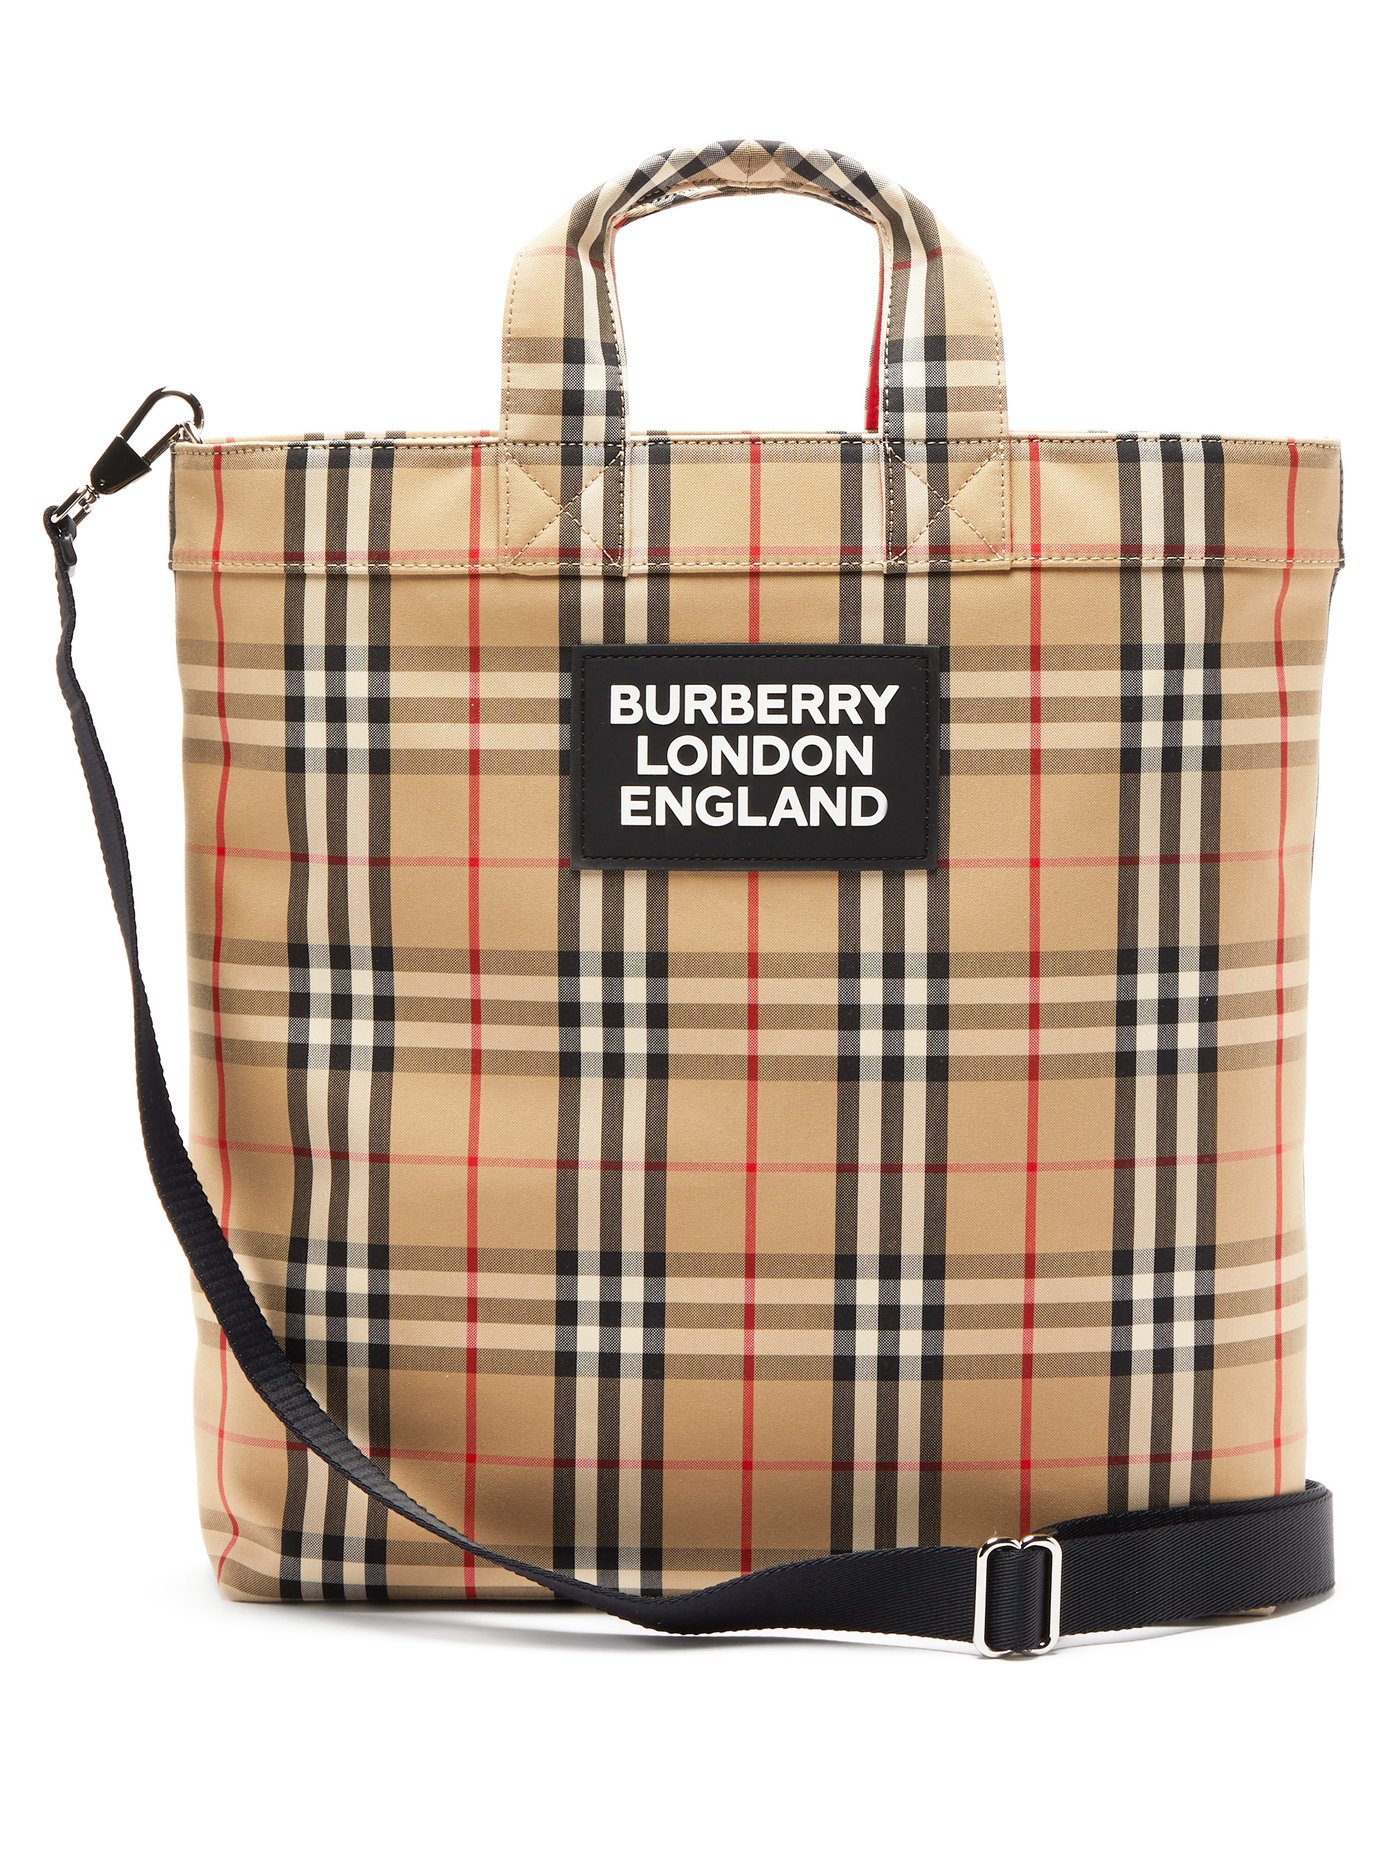 all burberry bag designs